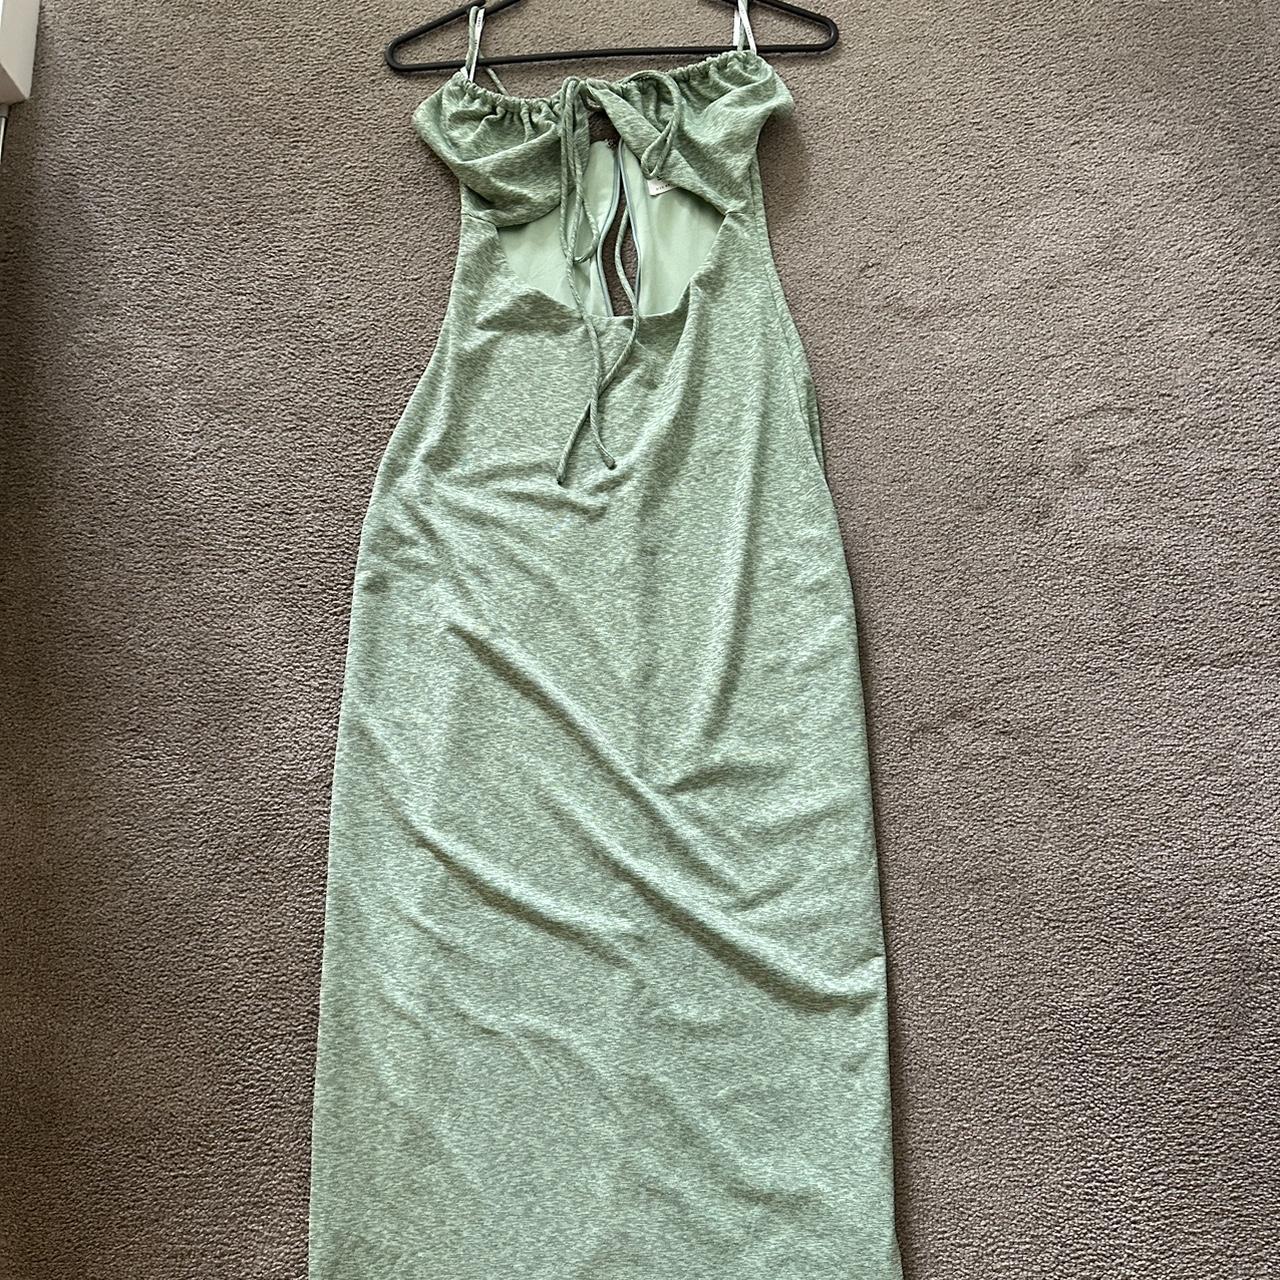 Sabo Skirt Dress Green Size XS Never Worn - Depop